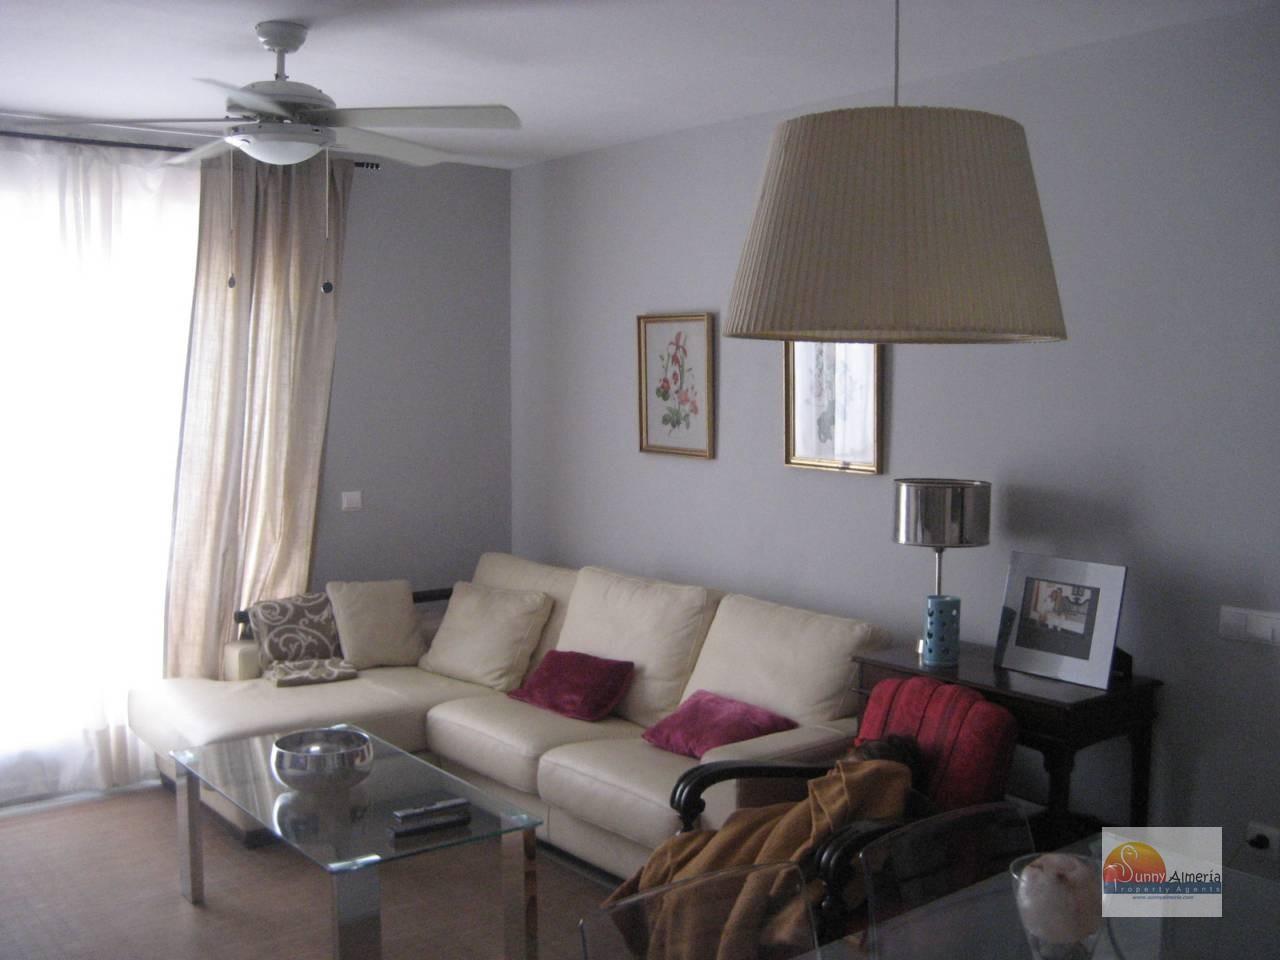 Apartment for rent in av rosita ferrer 4 (Roquetas de Mar), 600 €/month